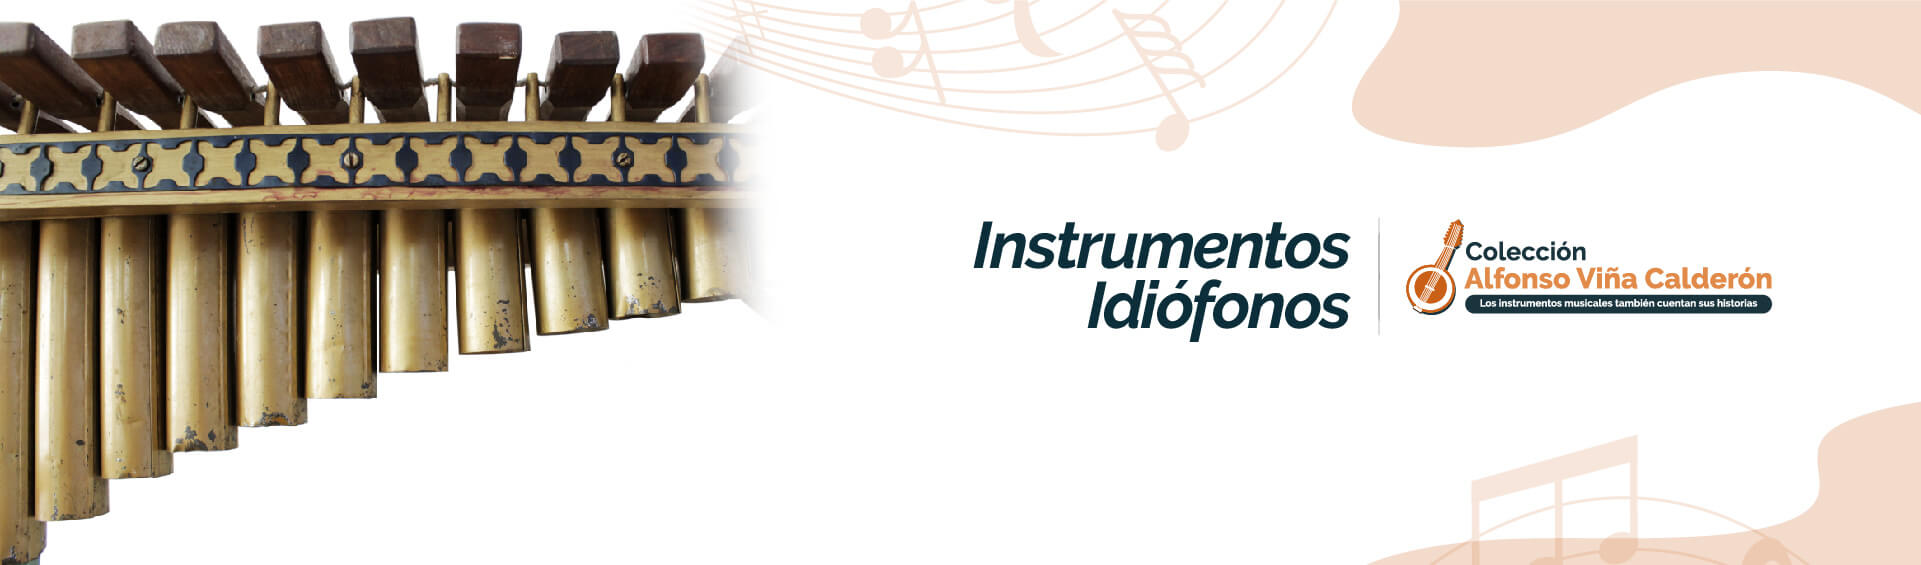 banner de la página instrumentos idiófonos del museo Alfonso Viña